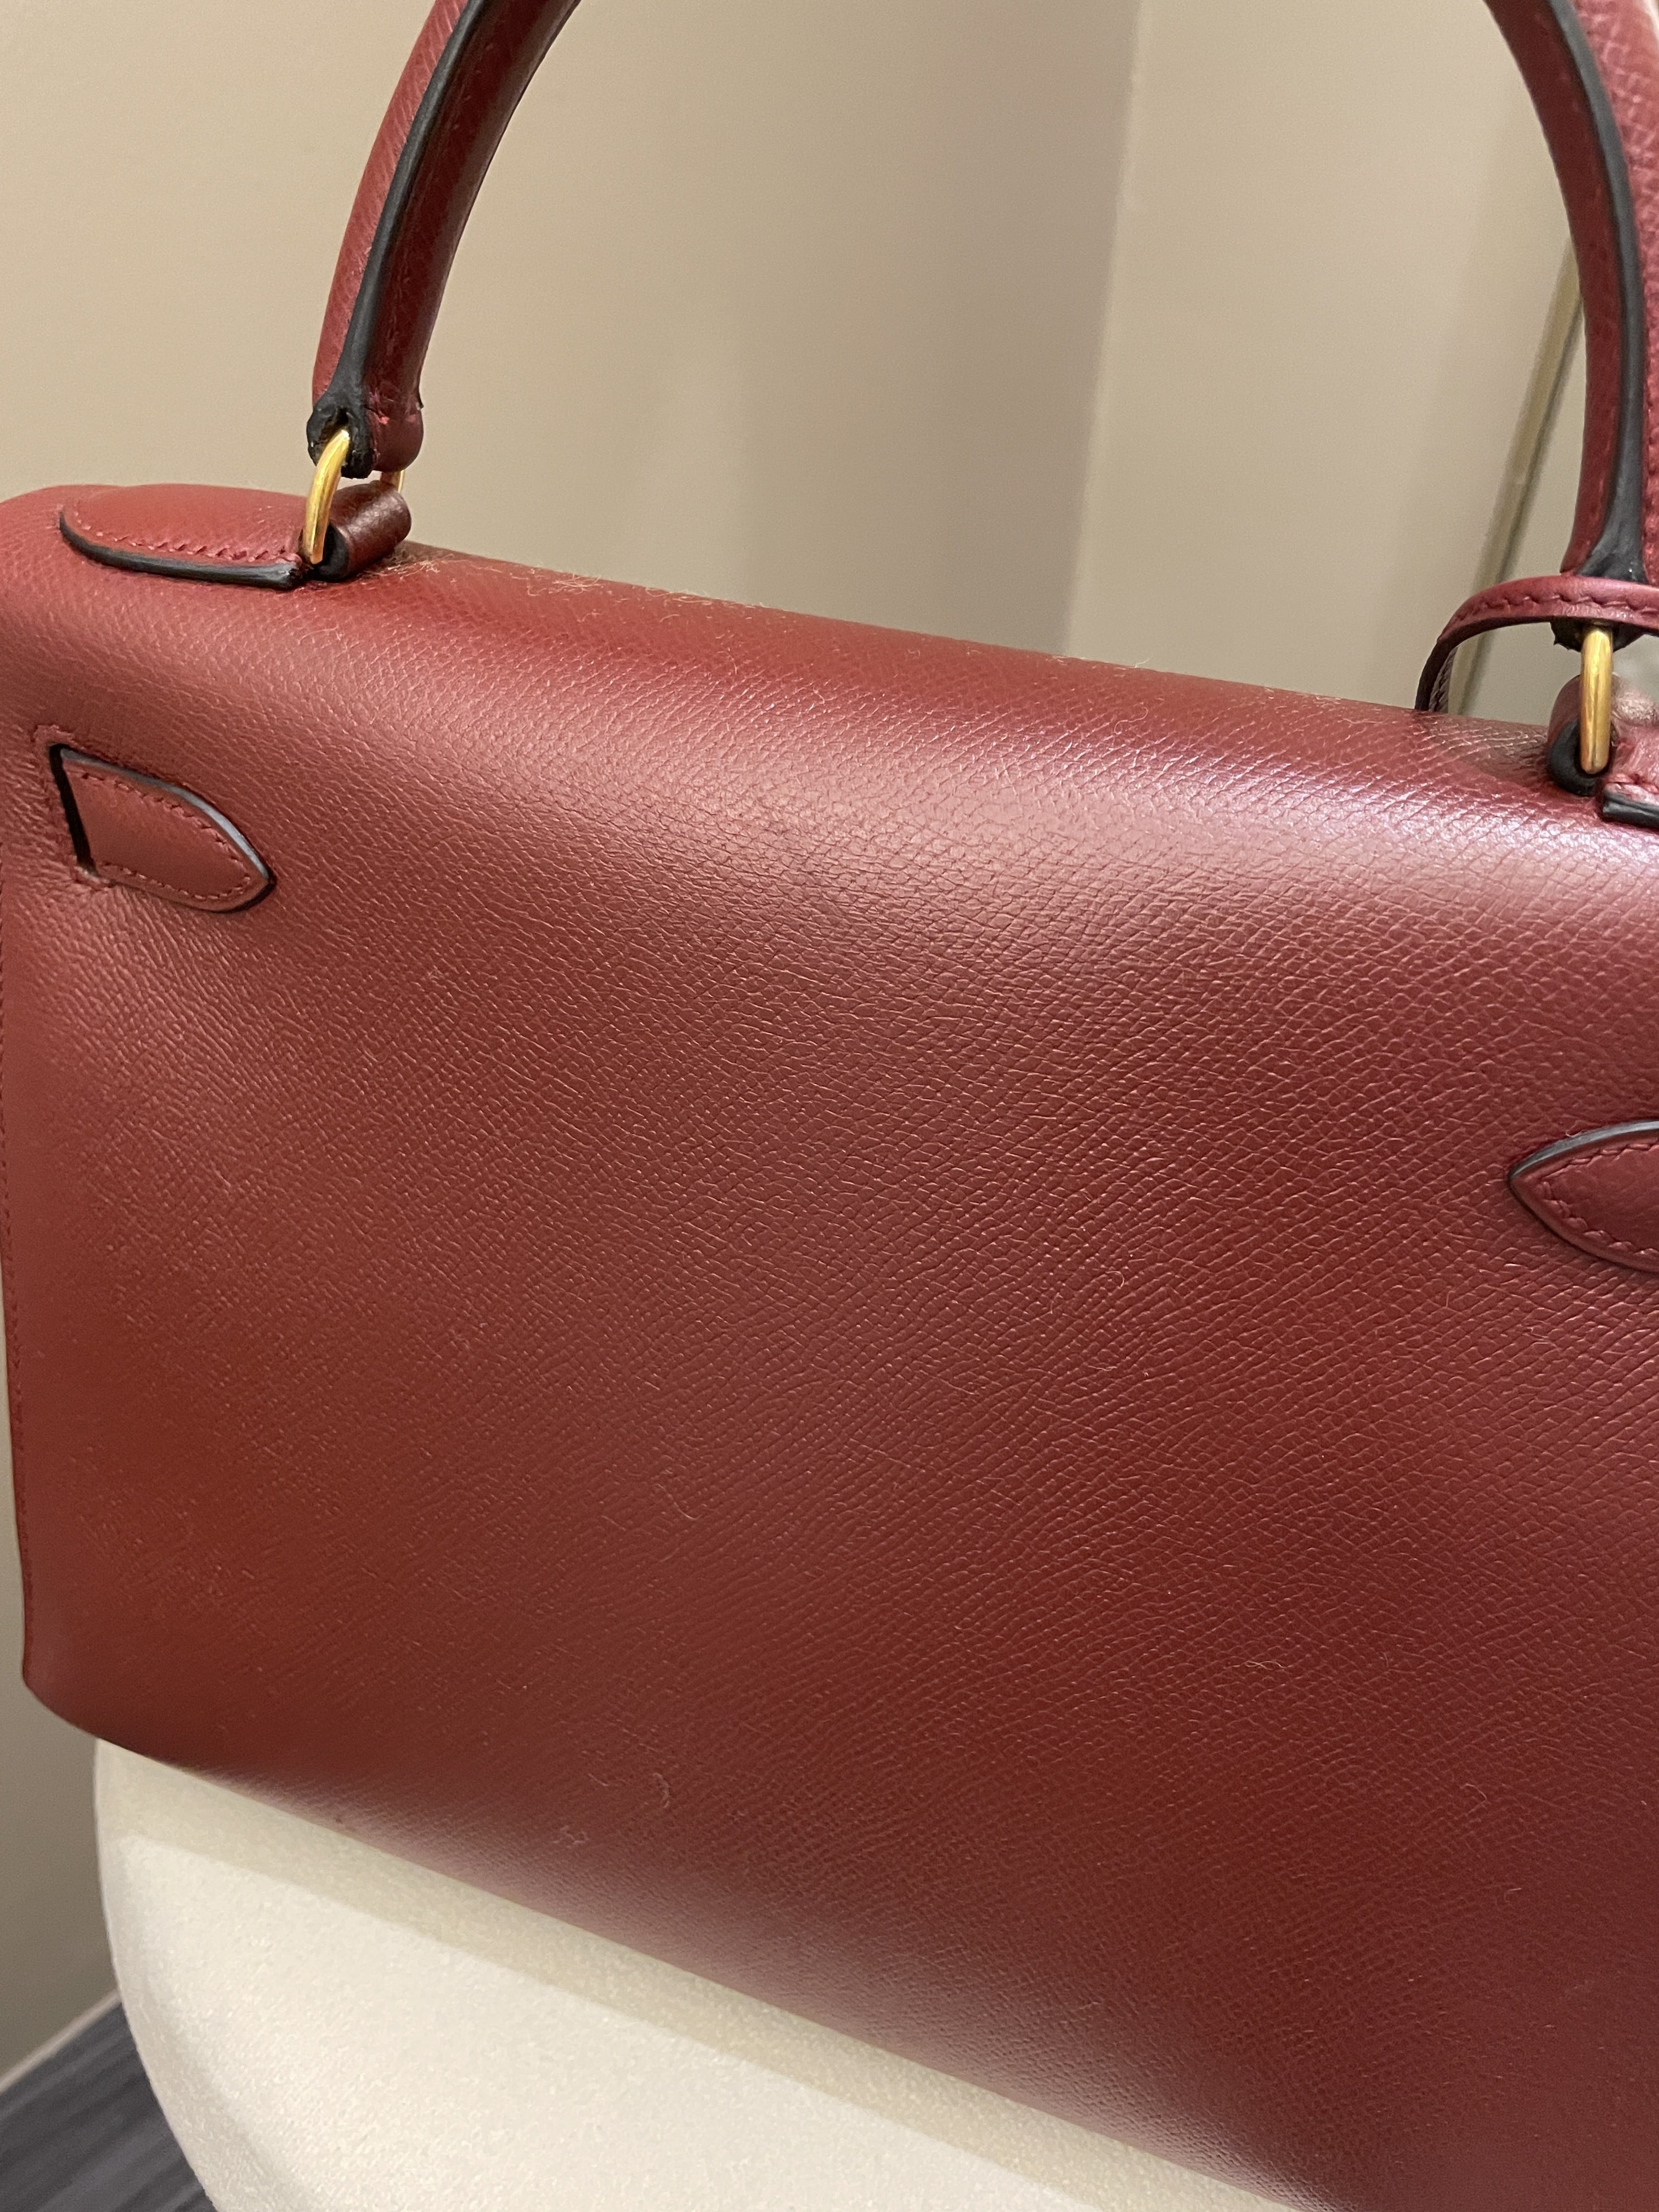 Hermès Kelly 25 Sellier Rouge – Iconics Preloved Luxury